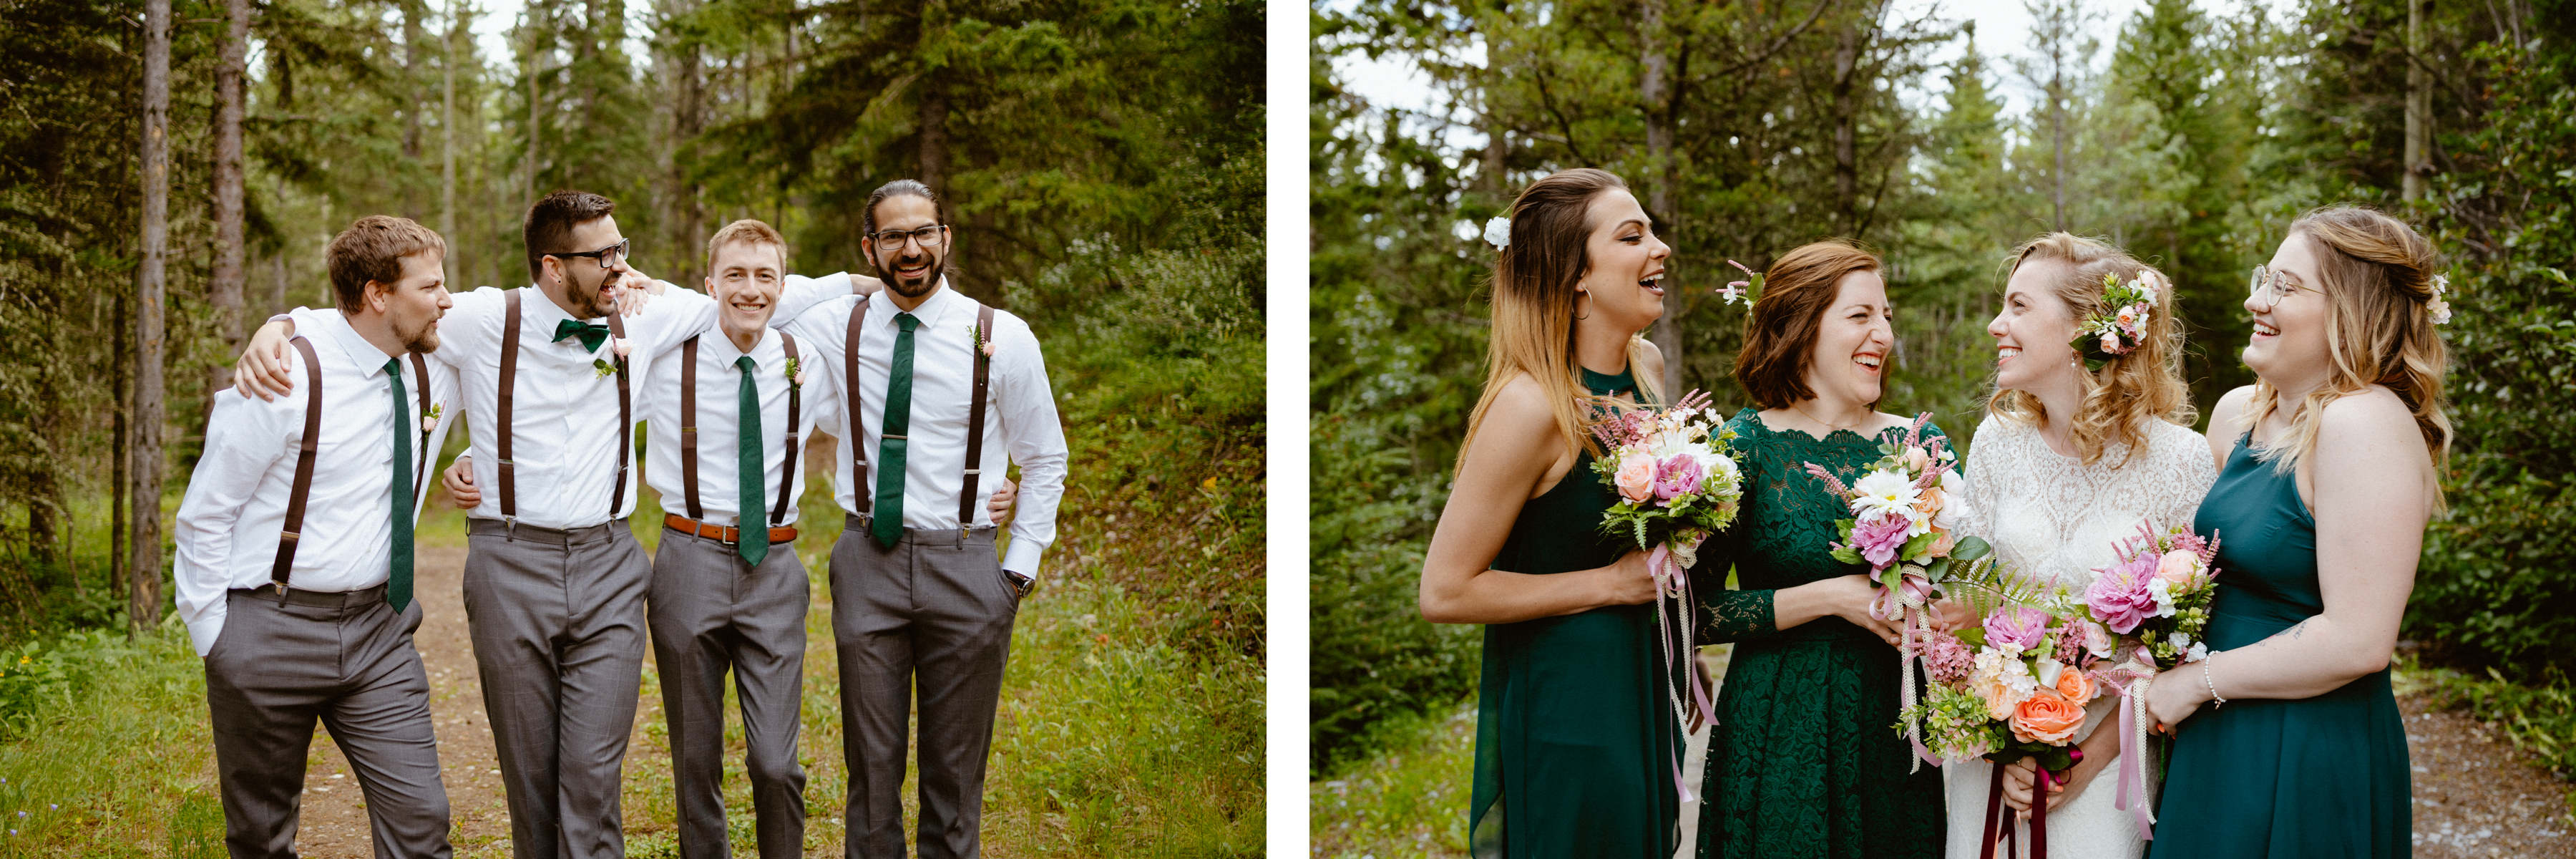 Kananaskis Wedding Photography at Pomeroy Mountain Lodge - Image  37